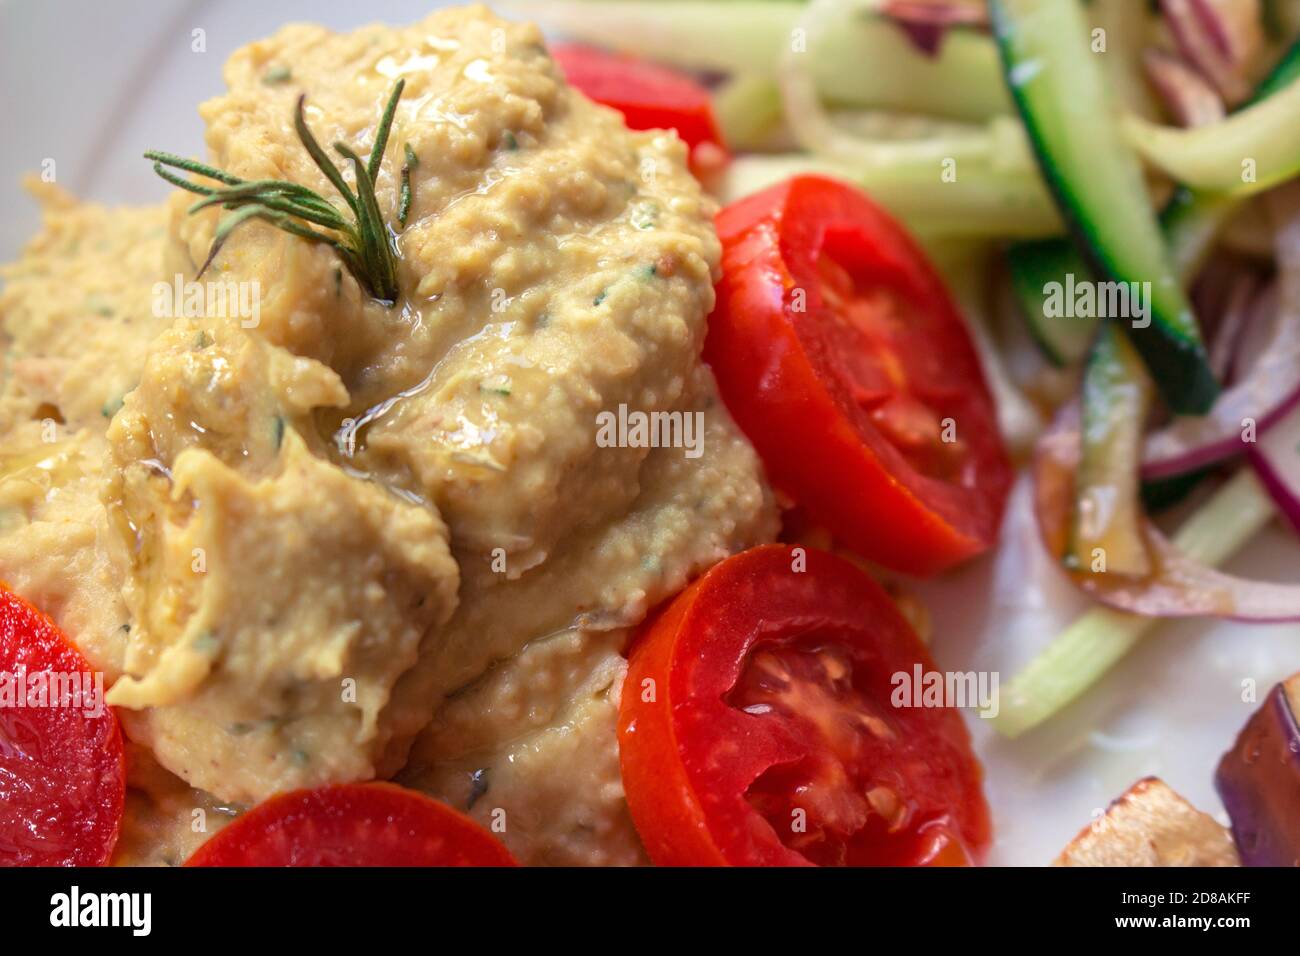 Detail eines veganen Gerichts mit Kichererbsen-Hummus, Datterini-Tomaten und Julienne-Gurken und Zwiebeln Stockfoto